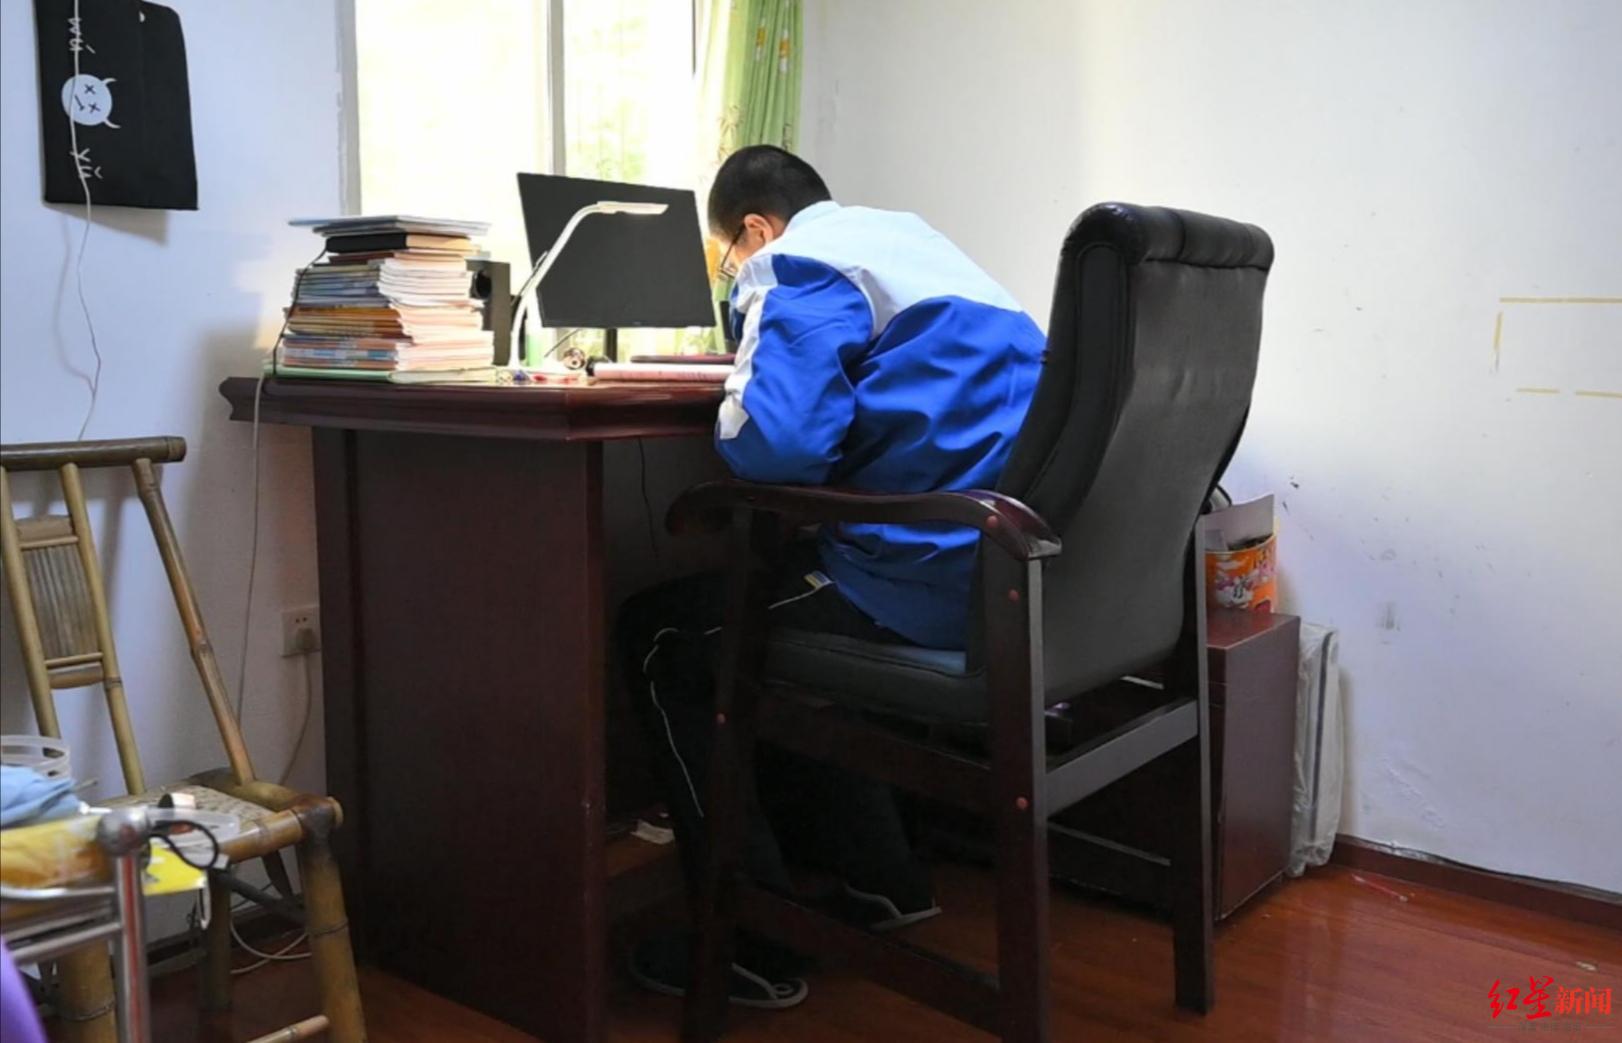 小宇用特制的桌椅学习。